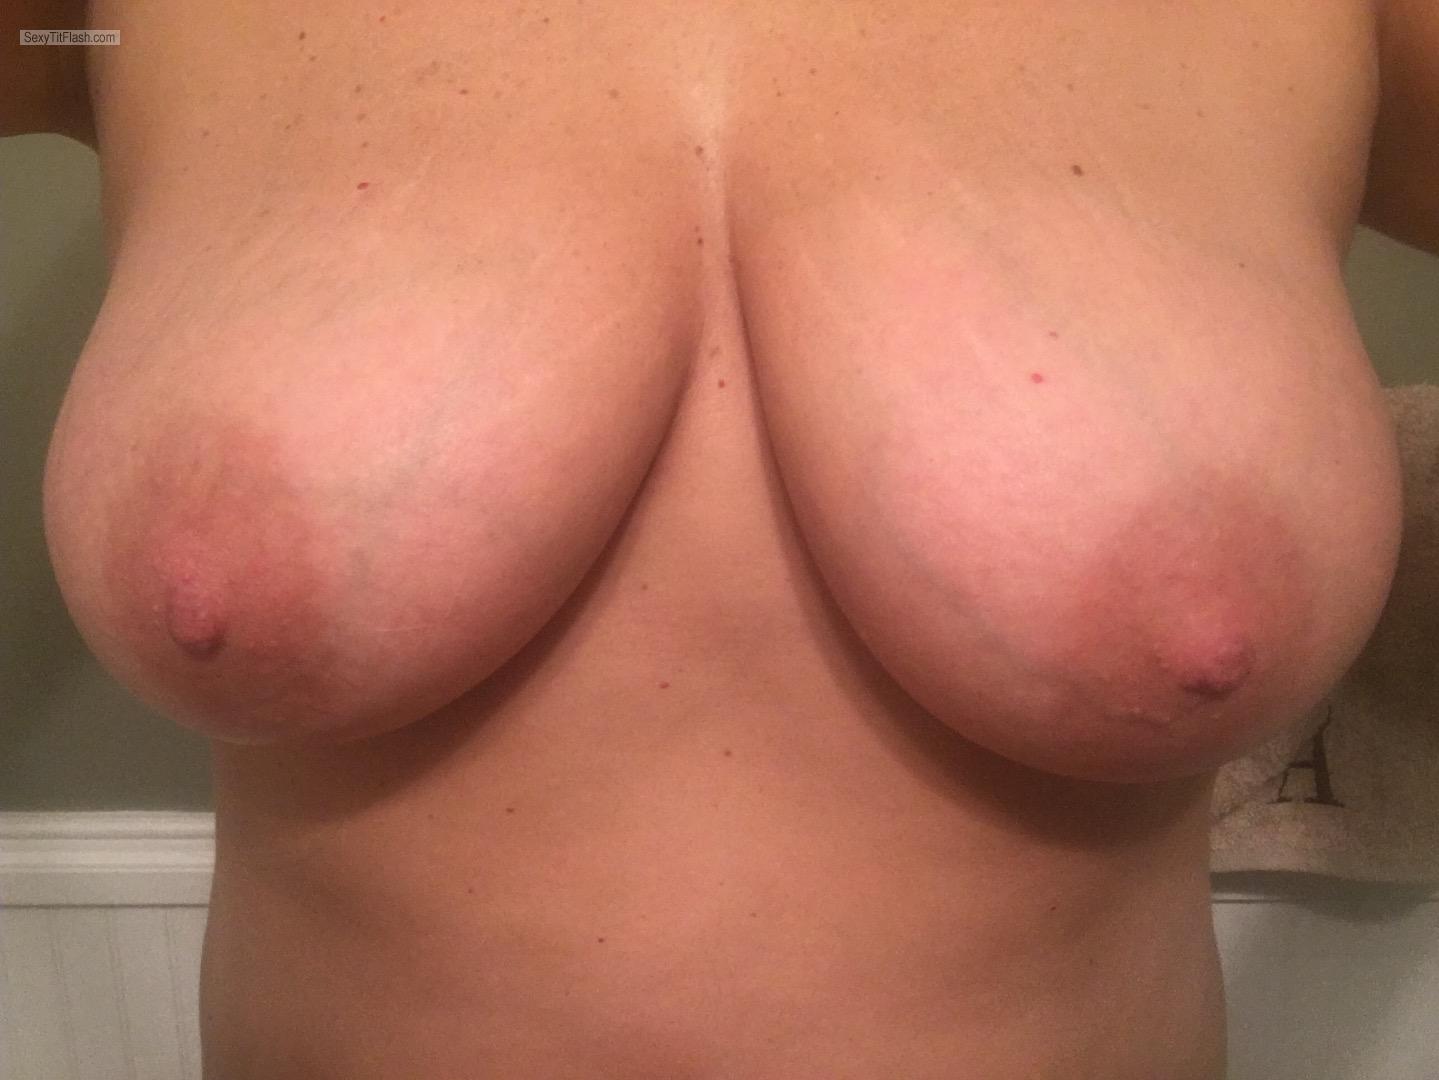 Tit Flash: My Big Tits - Topless Shannn from United States